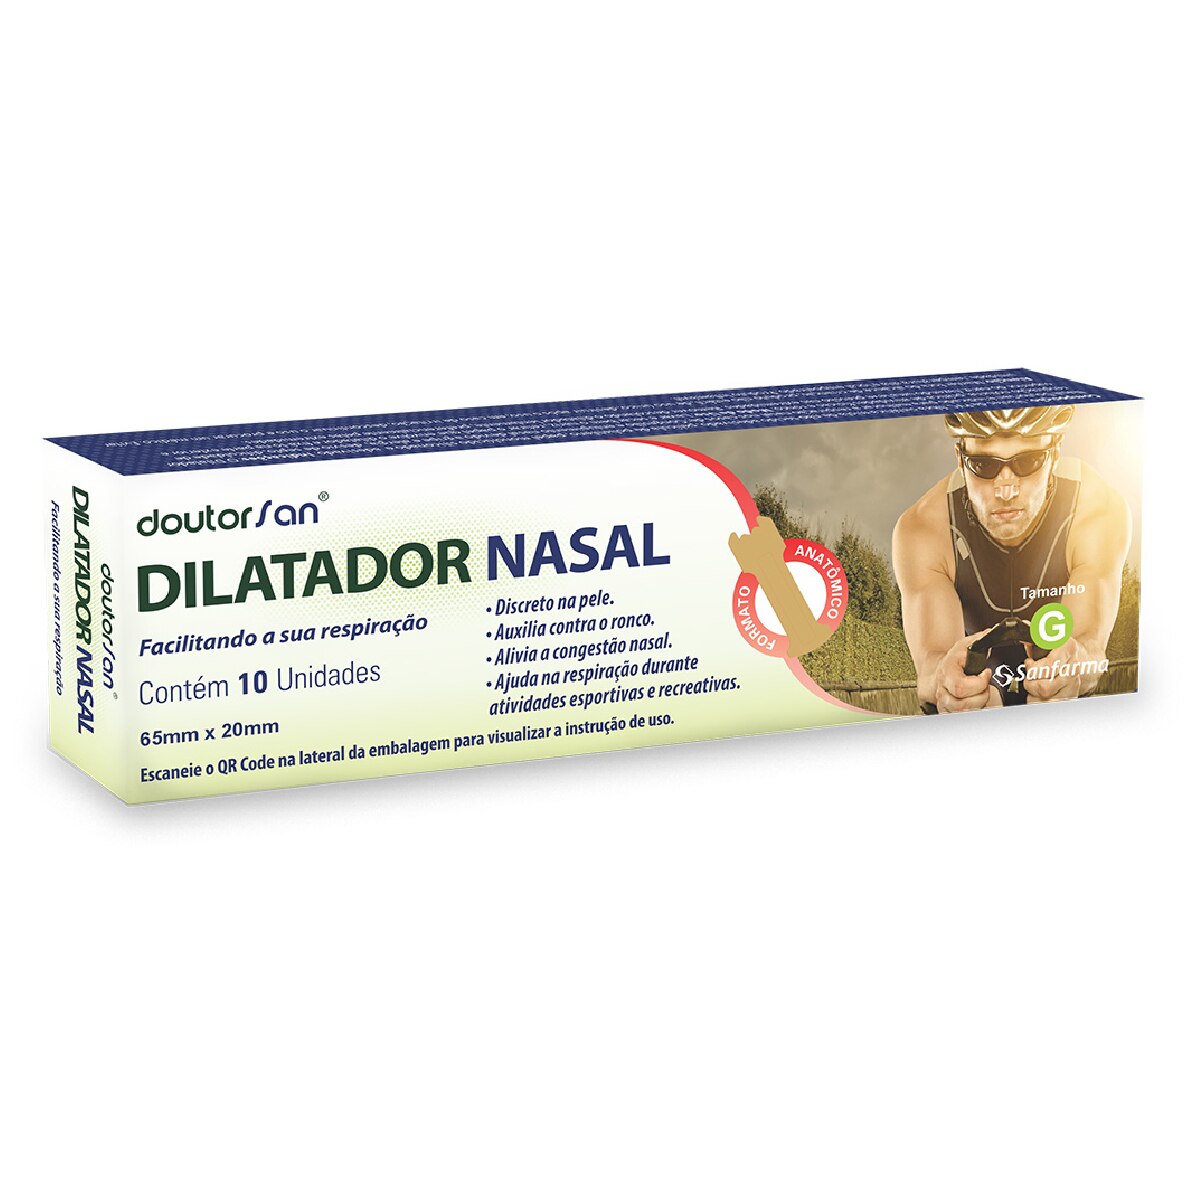 Dilatador Nasal DoutorSan G 10 Unidades